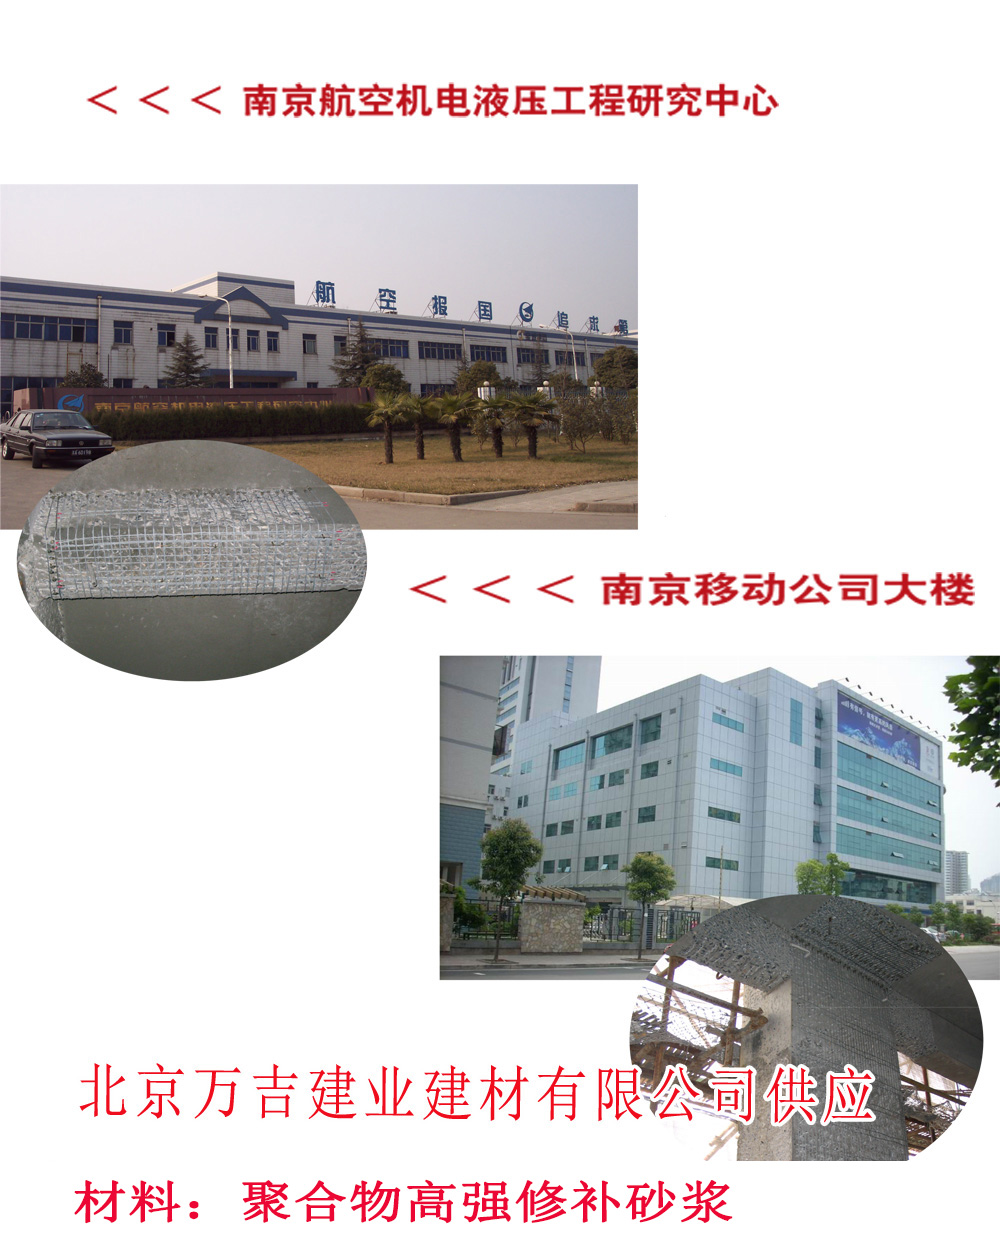 供应南京航空机电液压工程研究中心及南京移动公司大楼项目